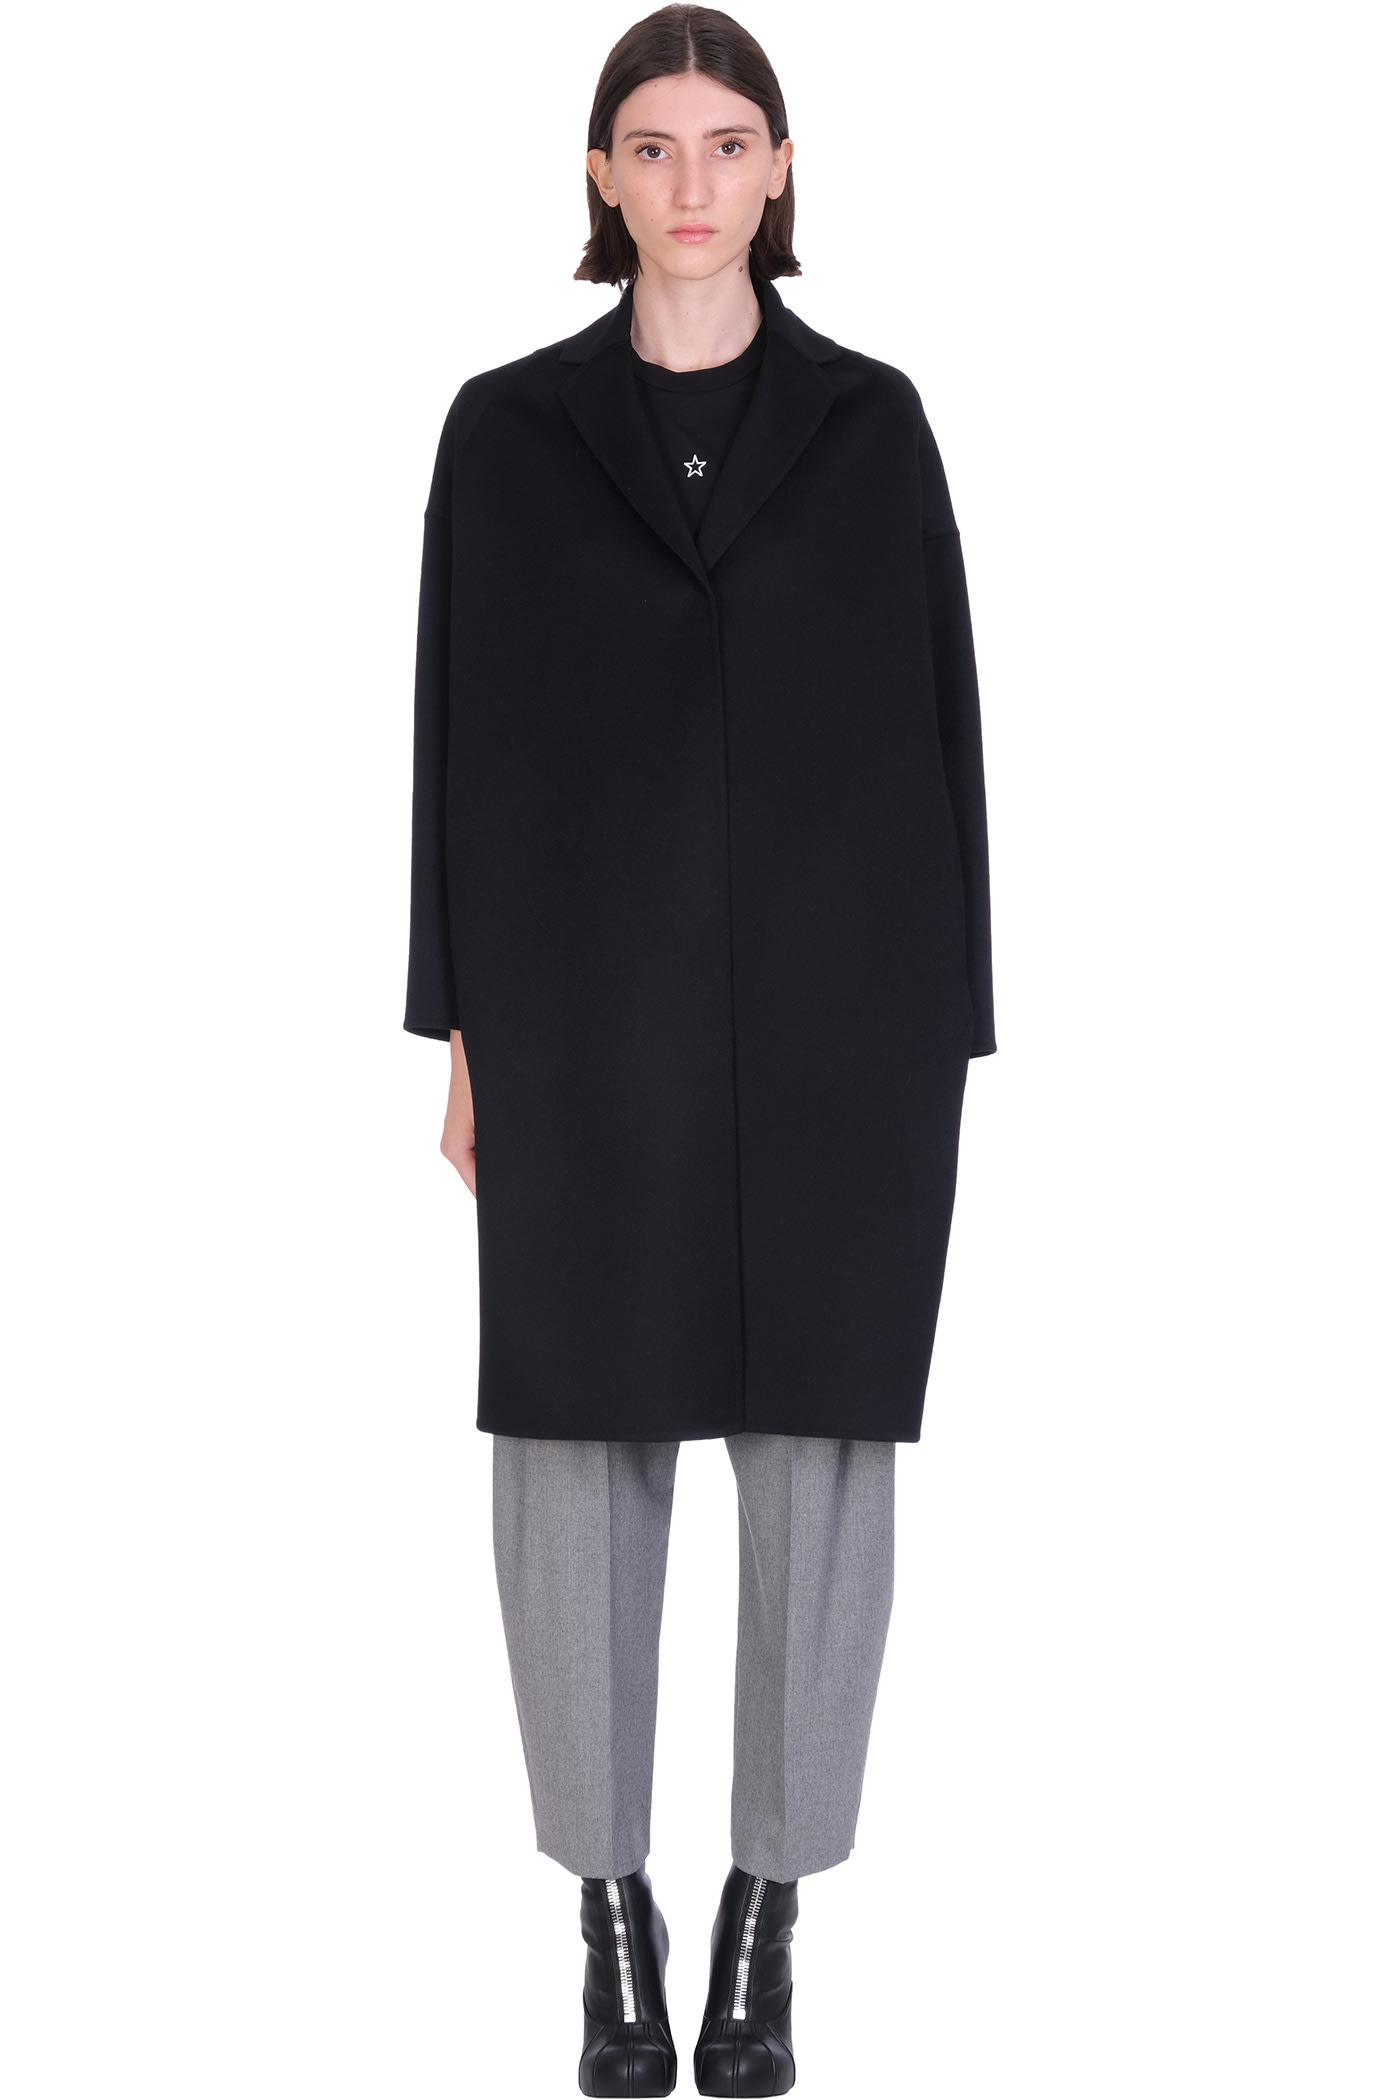 Stella McCartney Biplin Coat In Black Wool